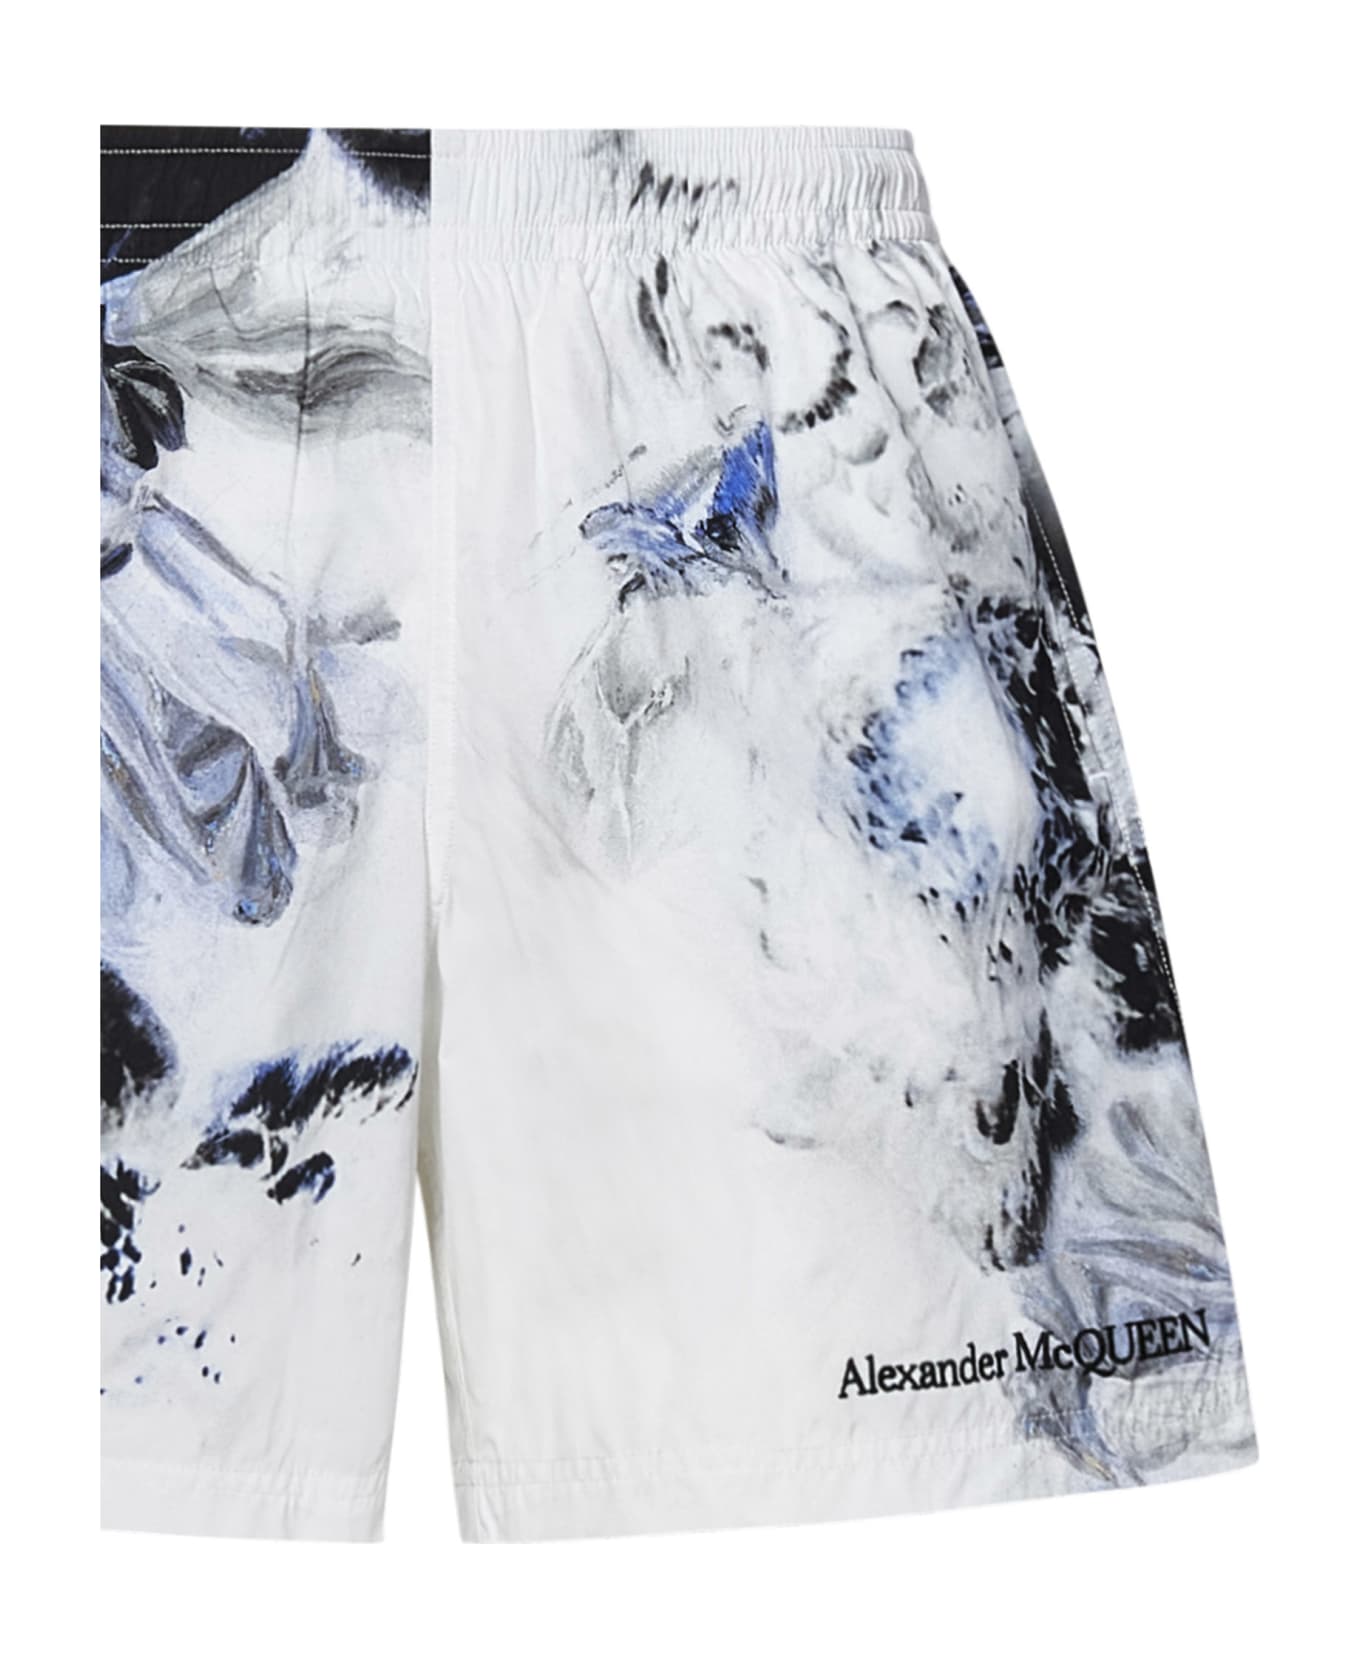 Alexander McQueen Swimsuit - White スイムトランクス